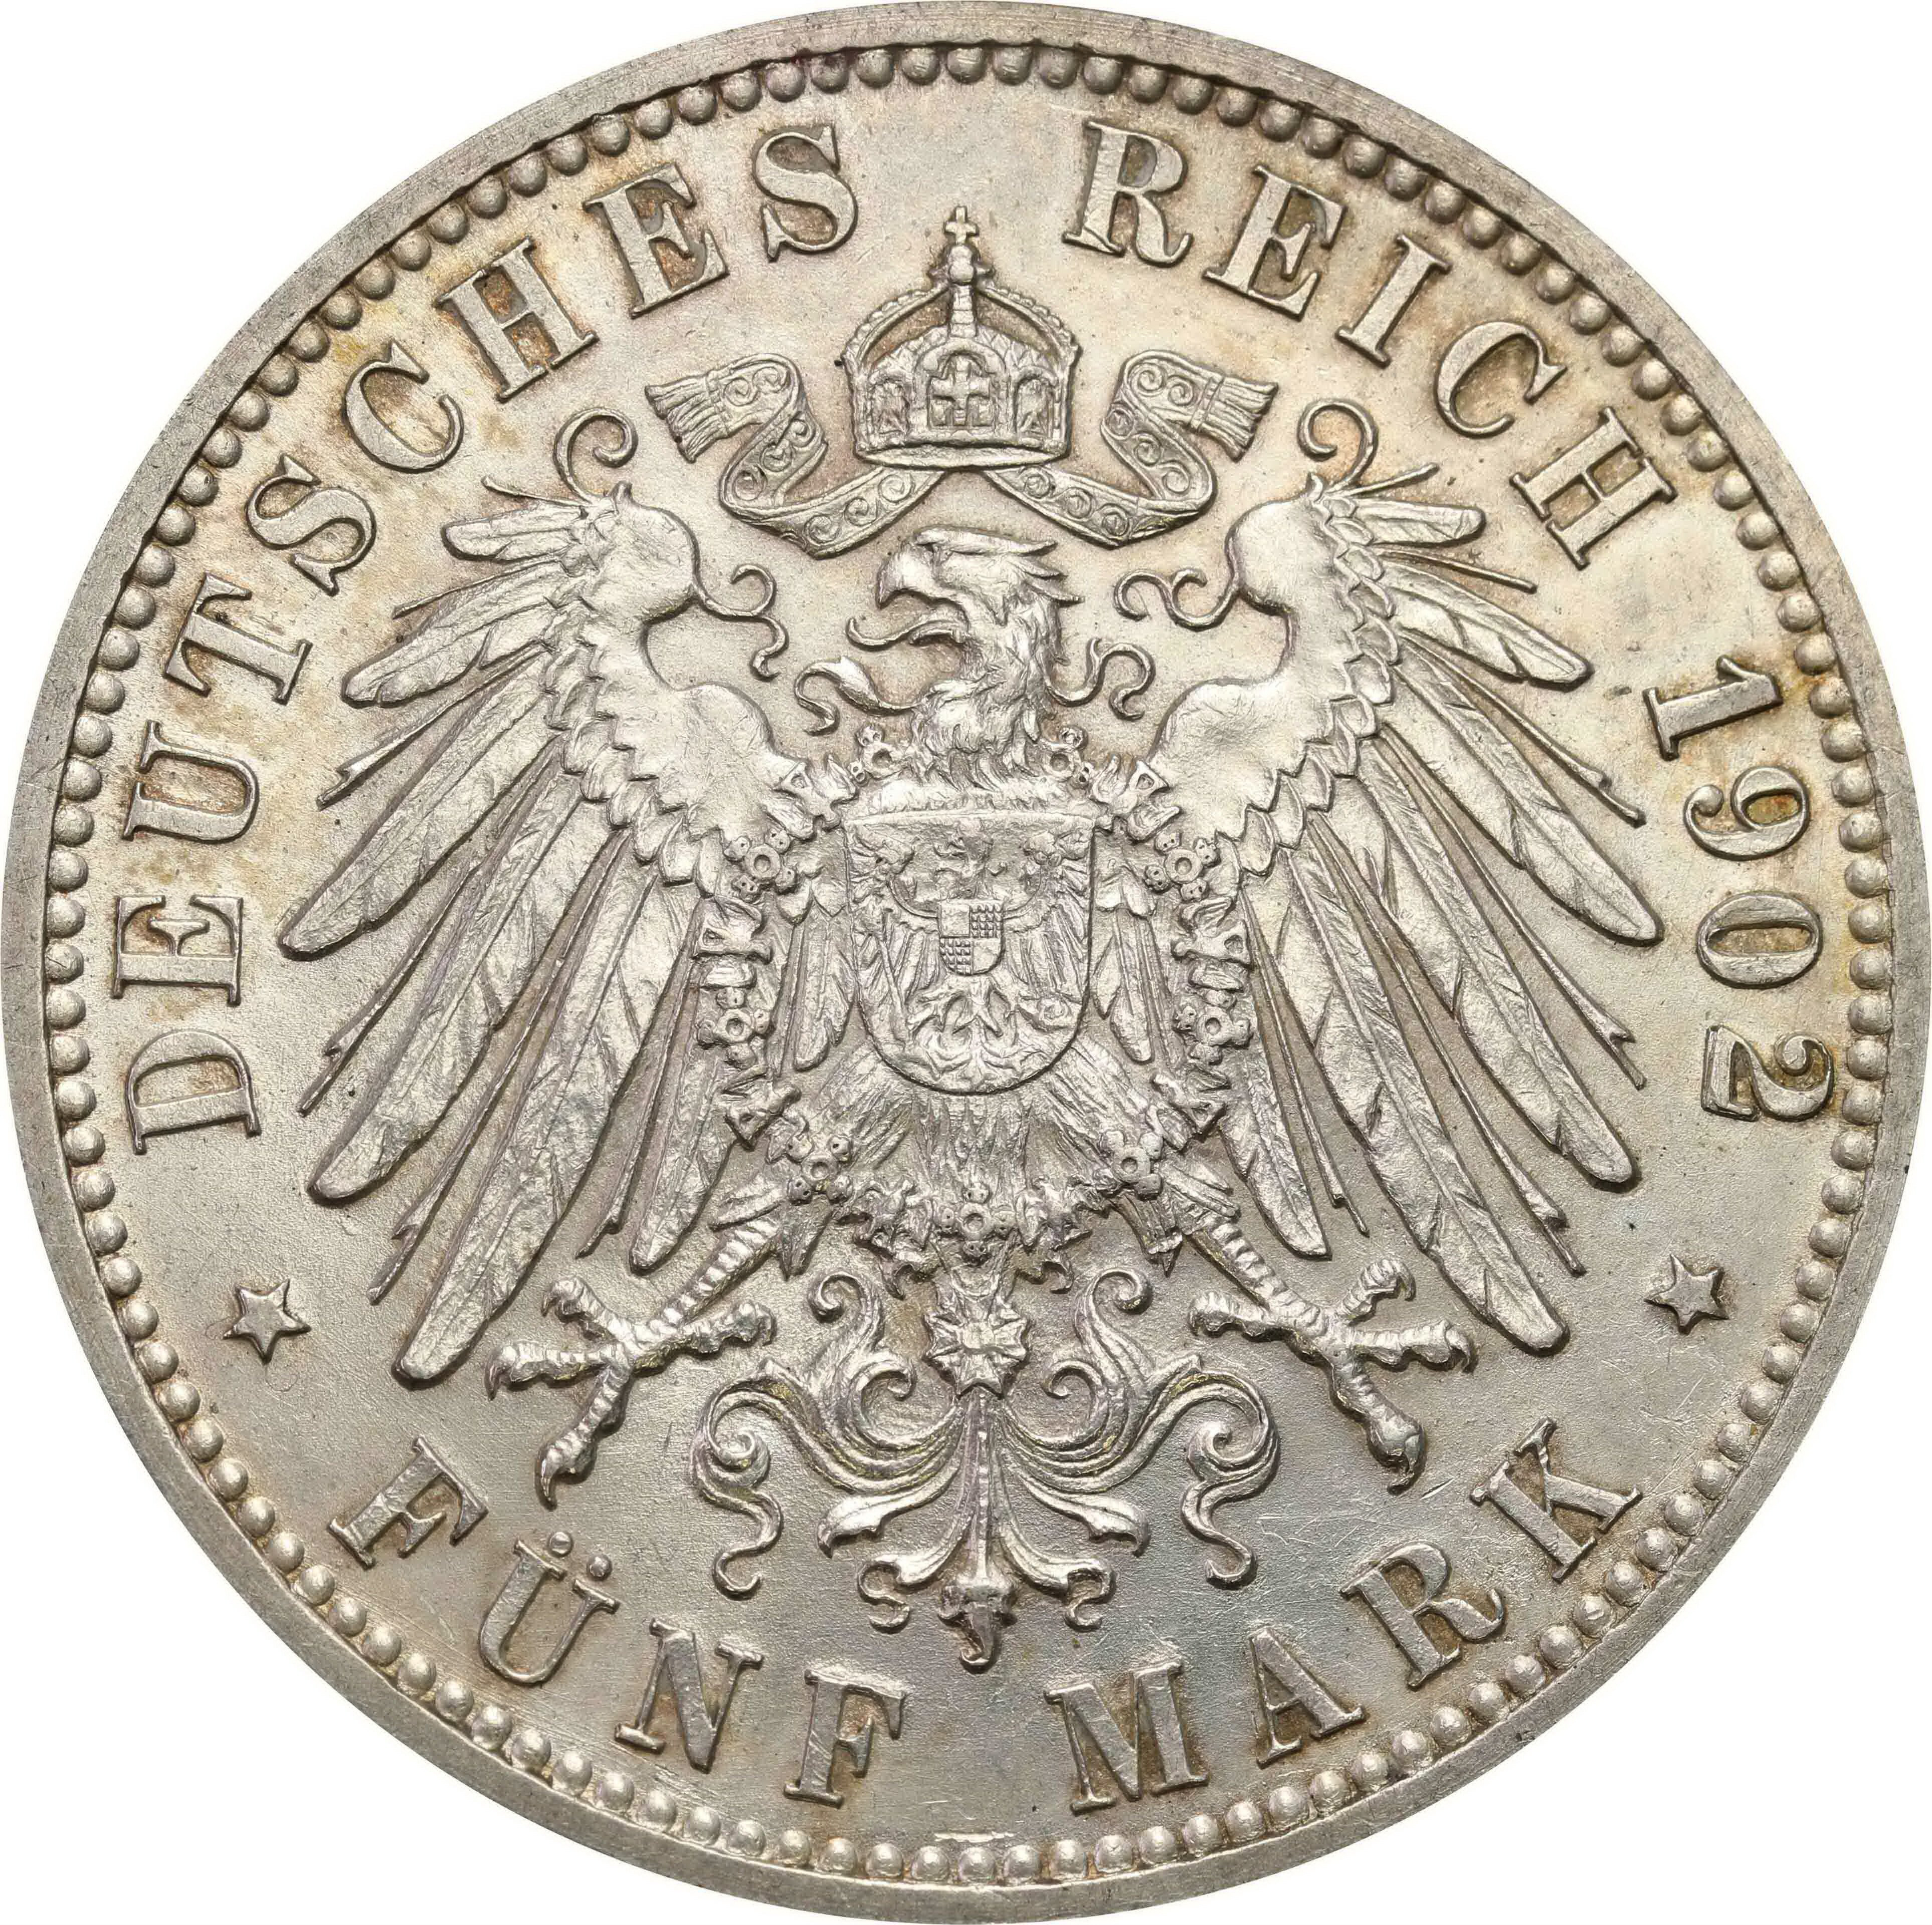 Niemcy, Badenia. 5 marek 1902 G, Karlsruhe - PIĘKNE